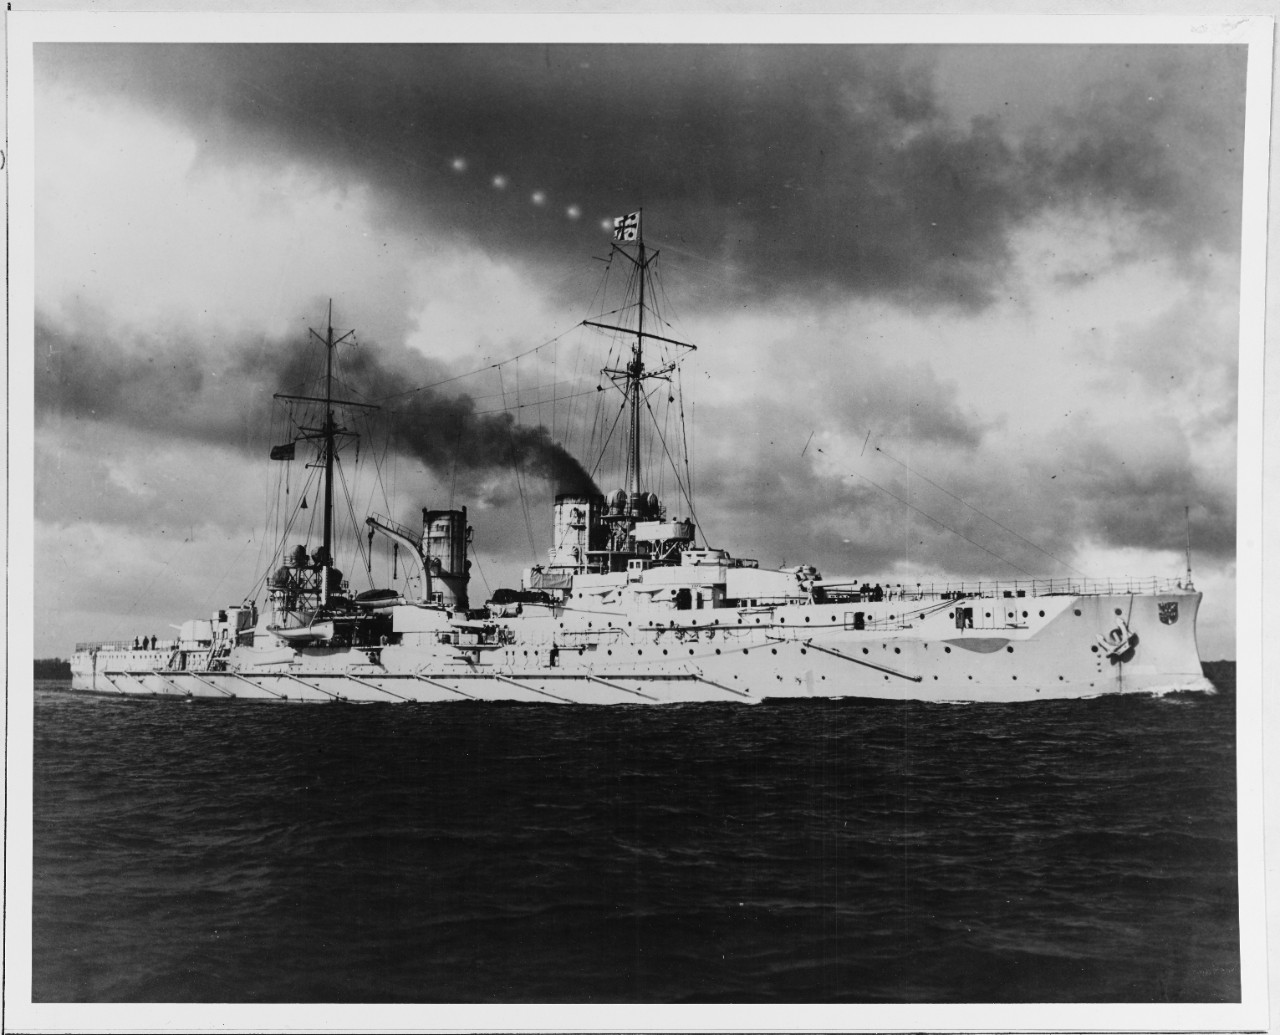 SMS BLUCHER (German armored cruiser, 1908)